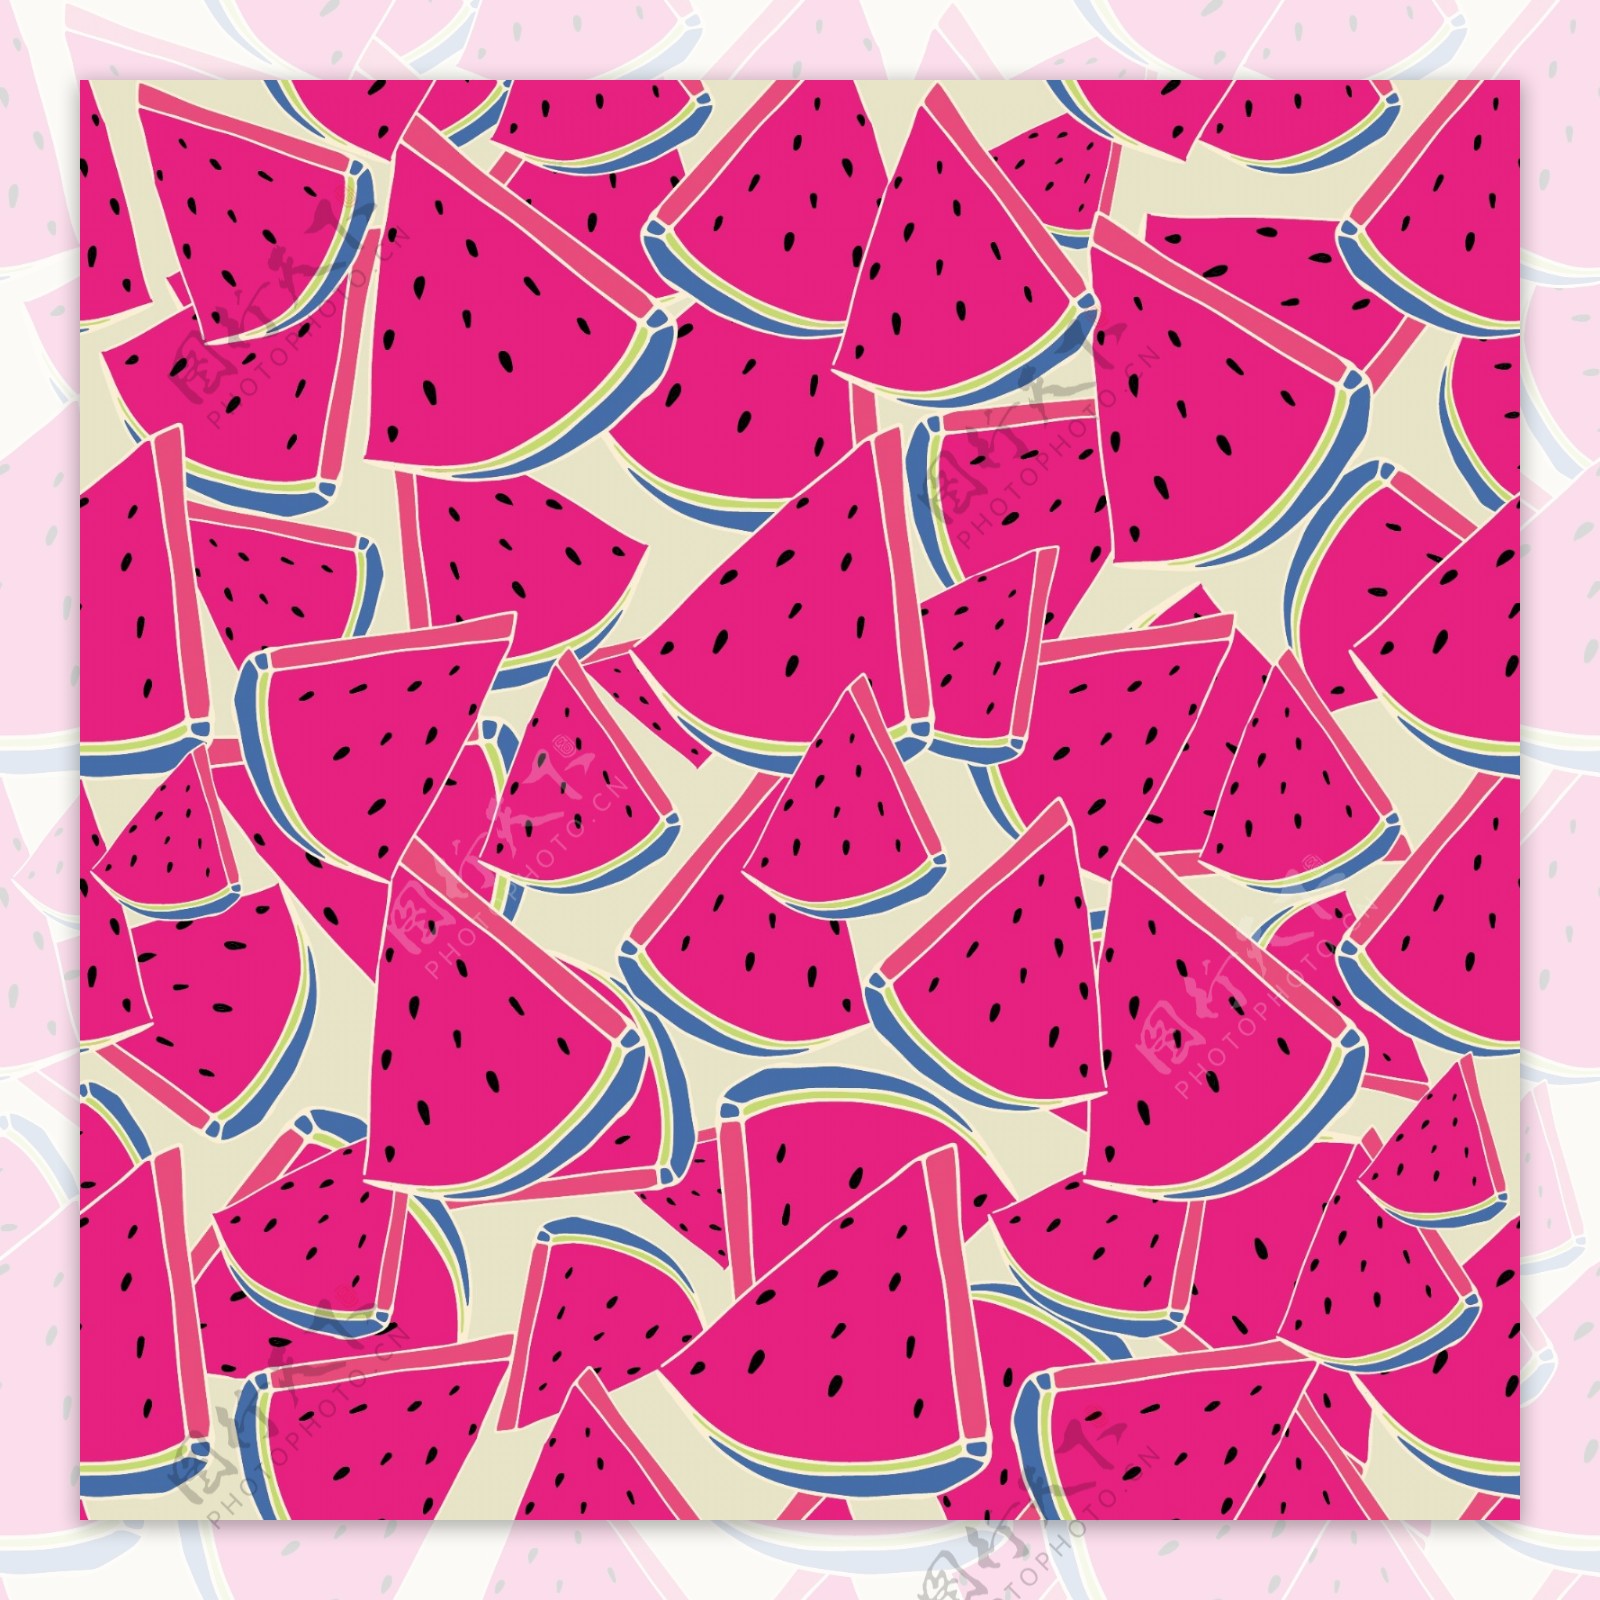 粉红色西瓜水果无缝拼接图案矢量背景